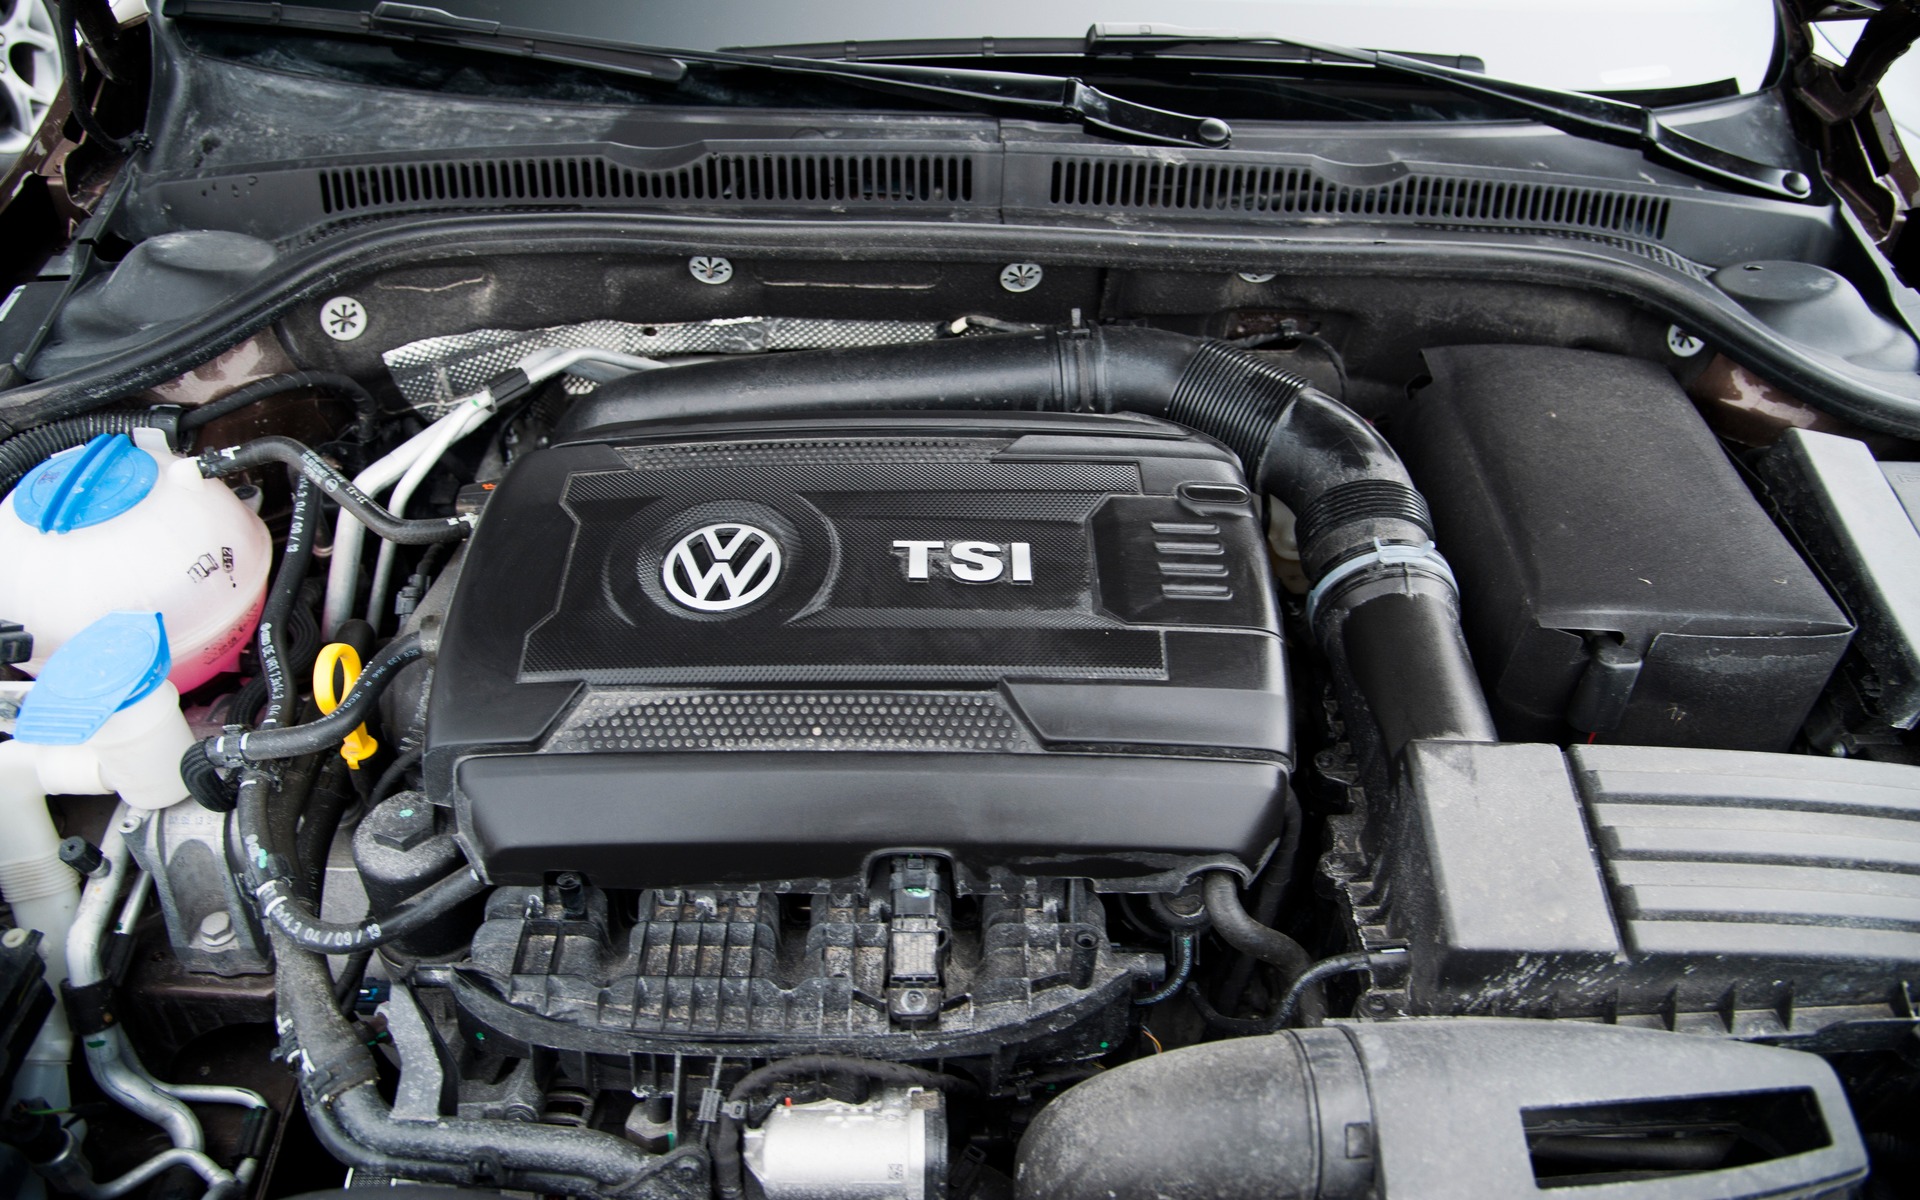 VW 1.8 TSI